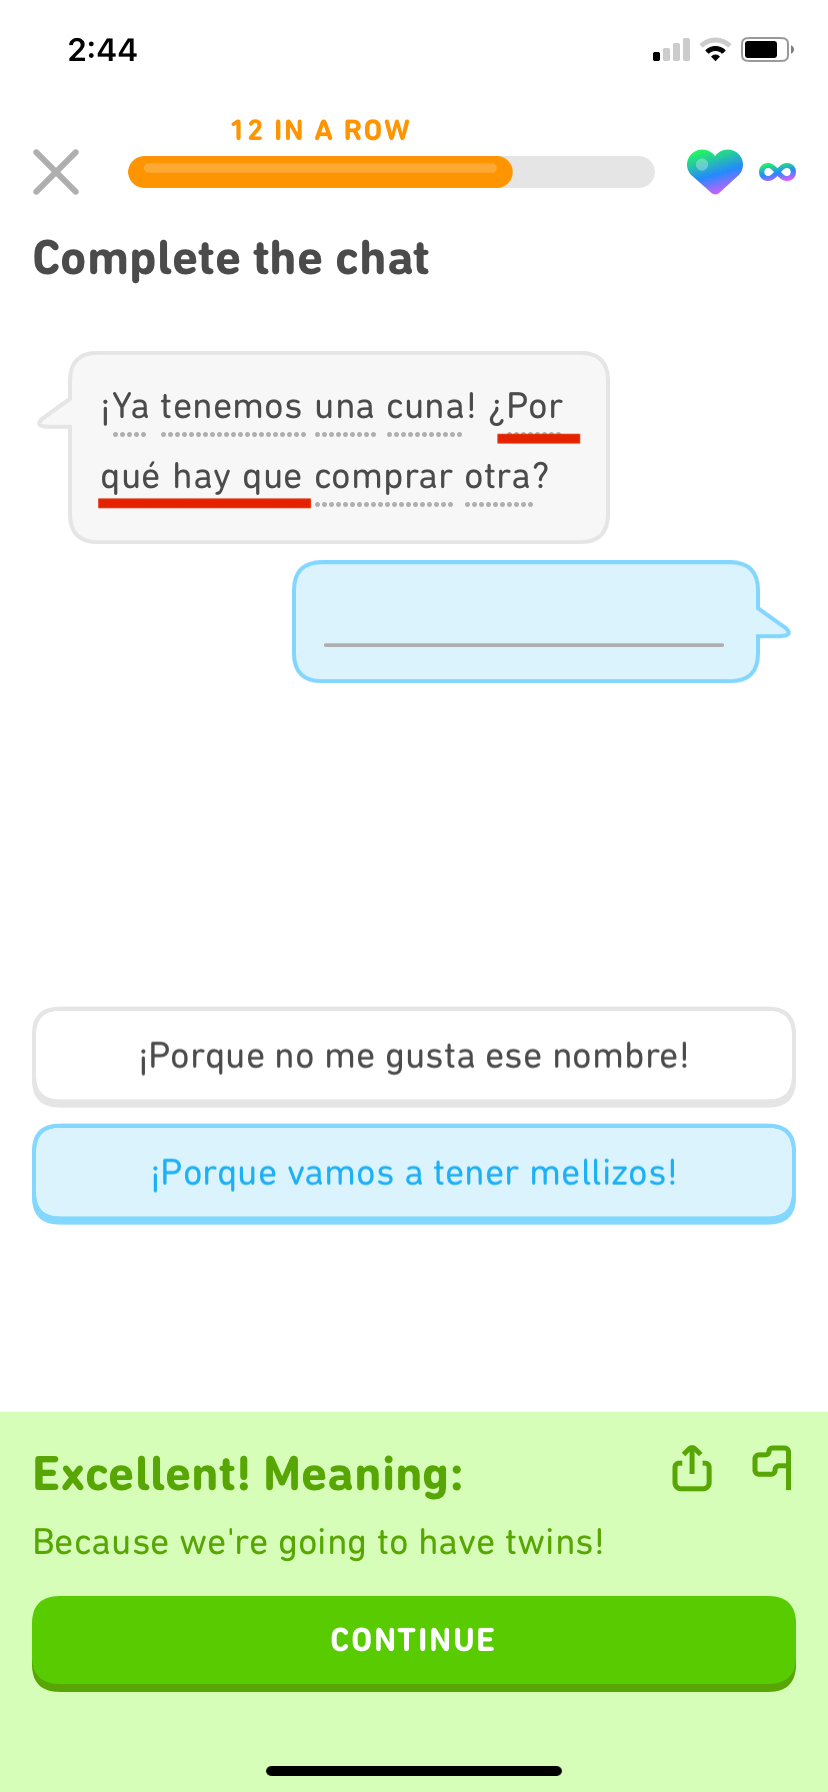 Captura de tela de um exercício de diálogo do Duolingo. O primeiro balão de diálogo diz algo em espanhol, e a expressão discutida neste post, "por qué hay que", está sublinhada em vermelho. O segundo balão está vazio e a pessoa selecionou a resposta correta, que significa “Porque vamos ter gêmeos!”